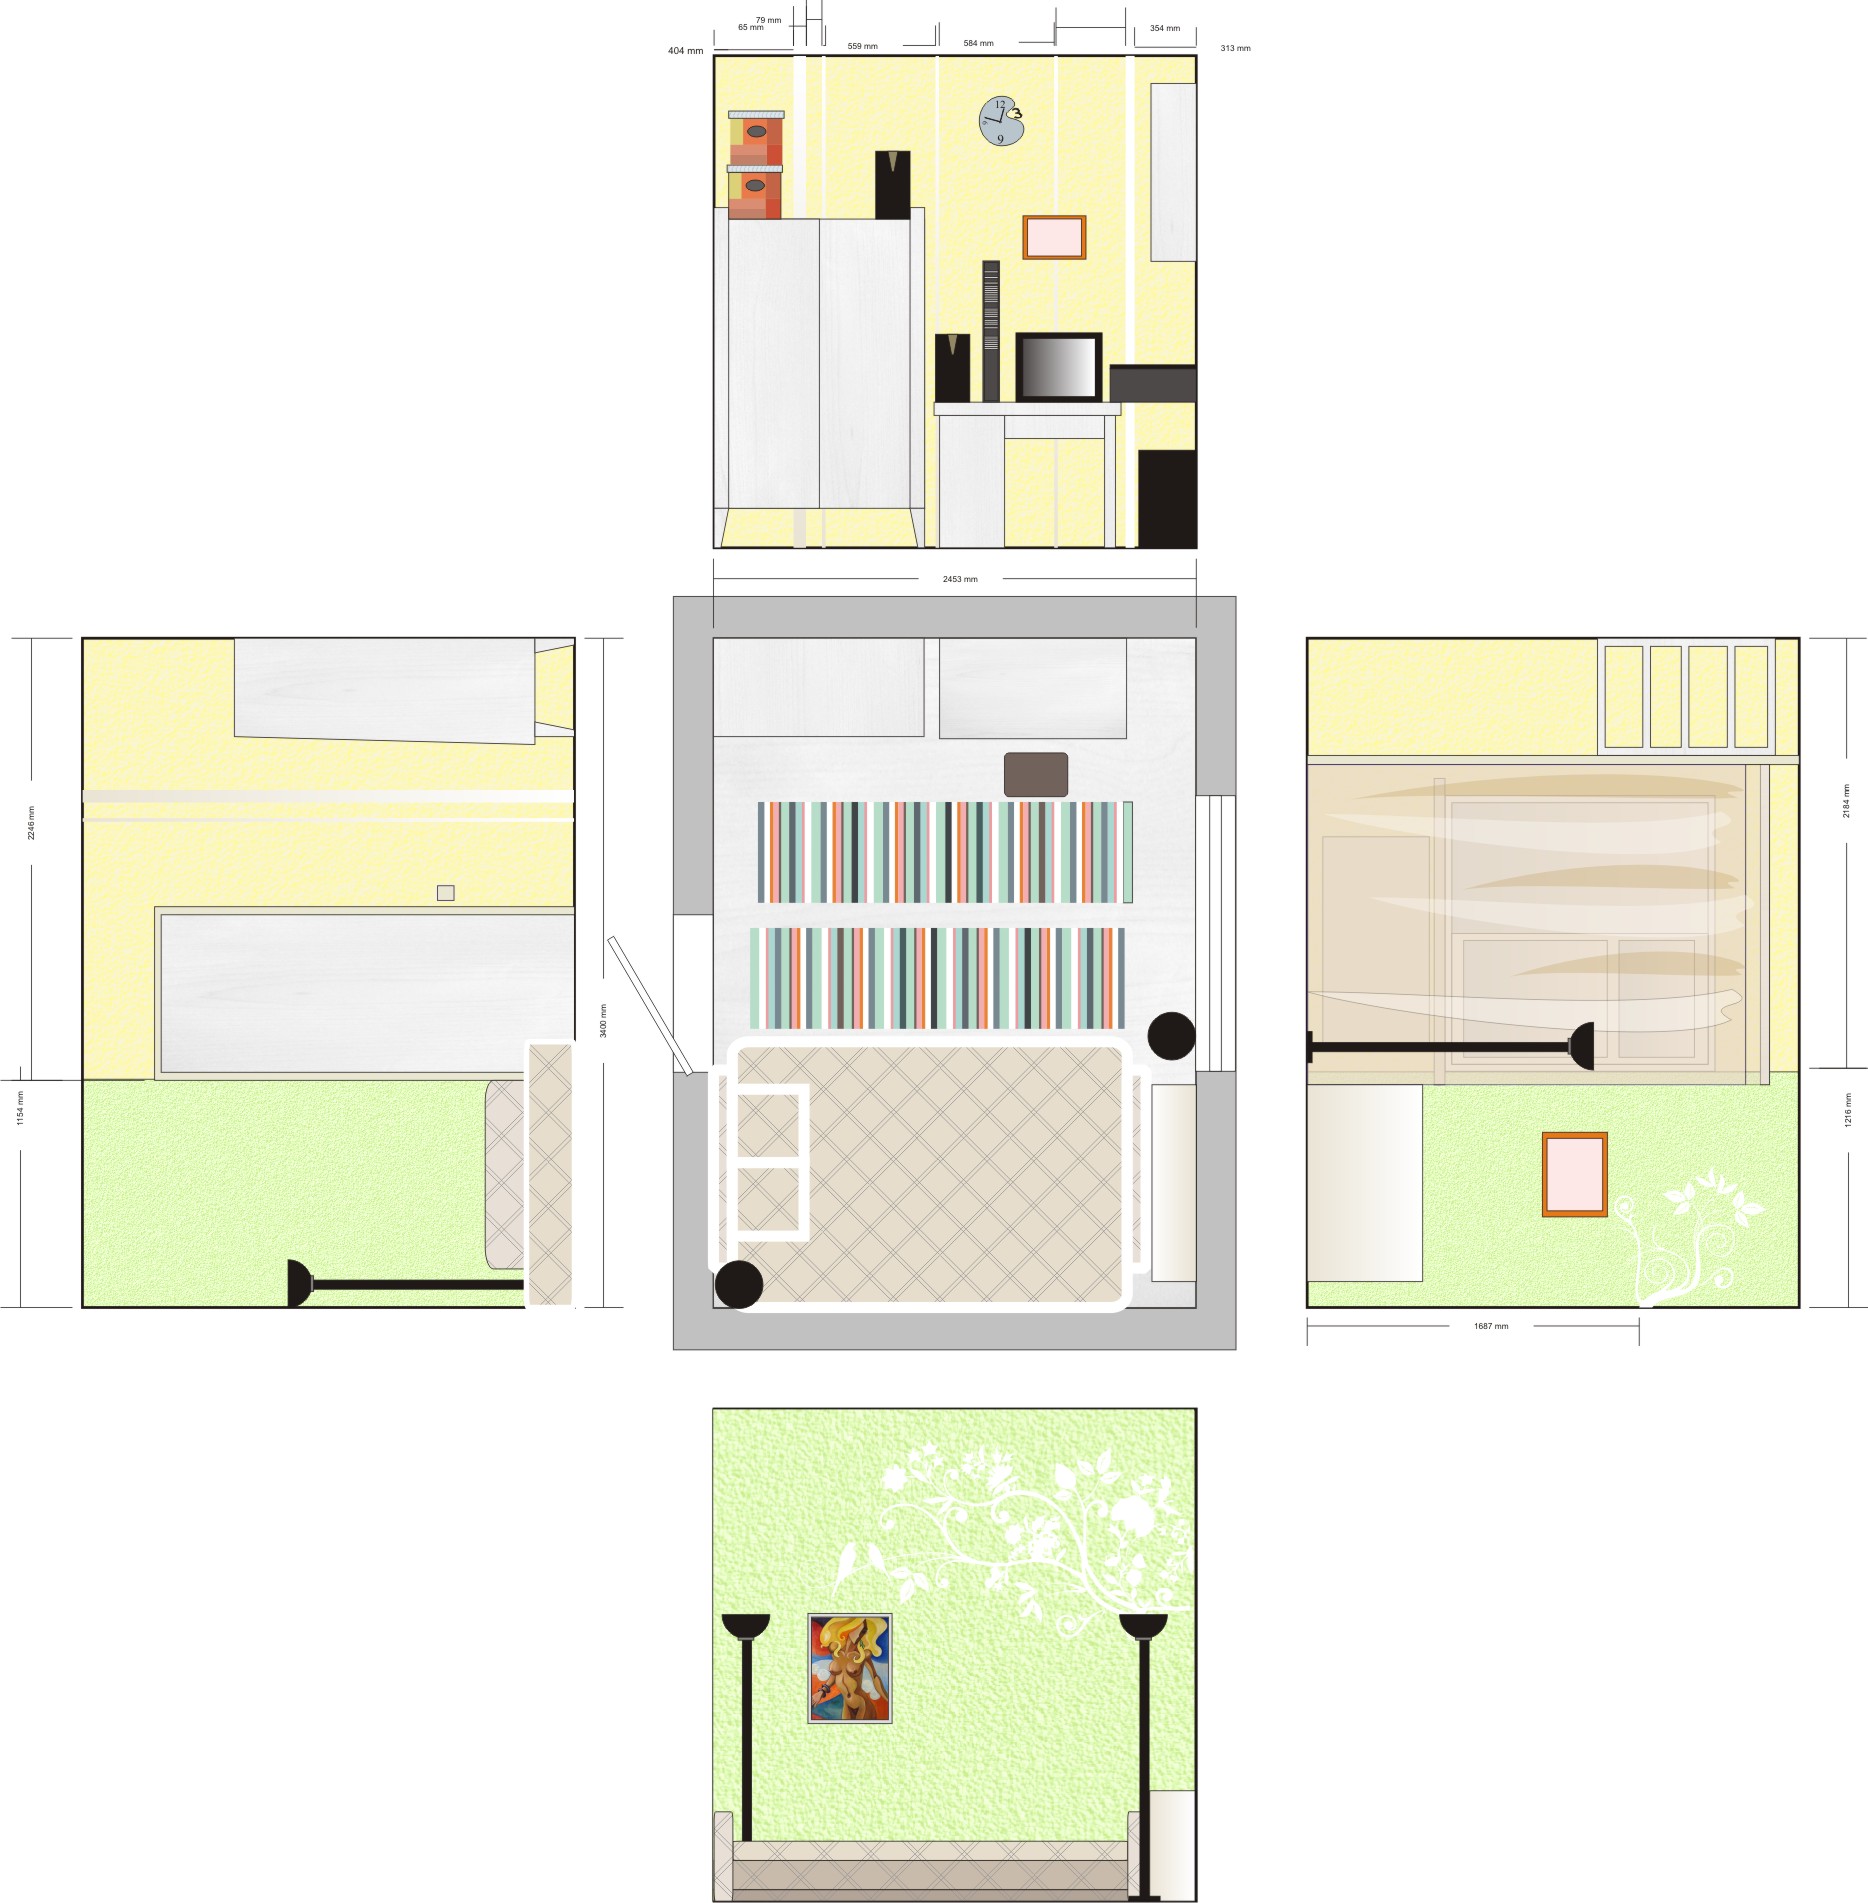 Дизайн-проект квартиры